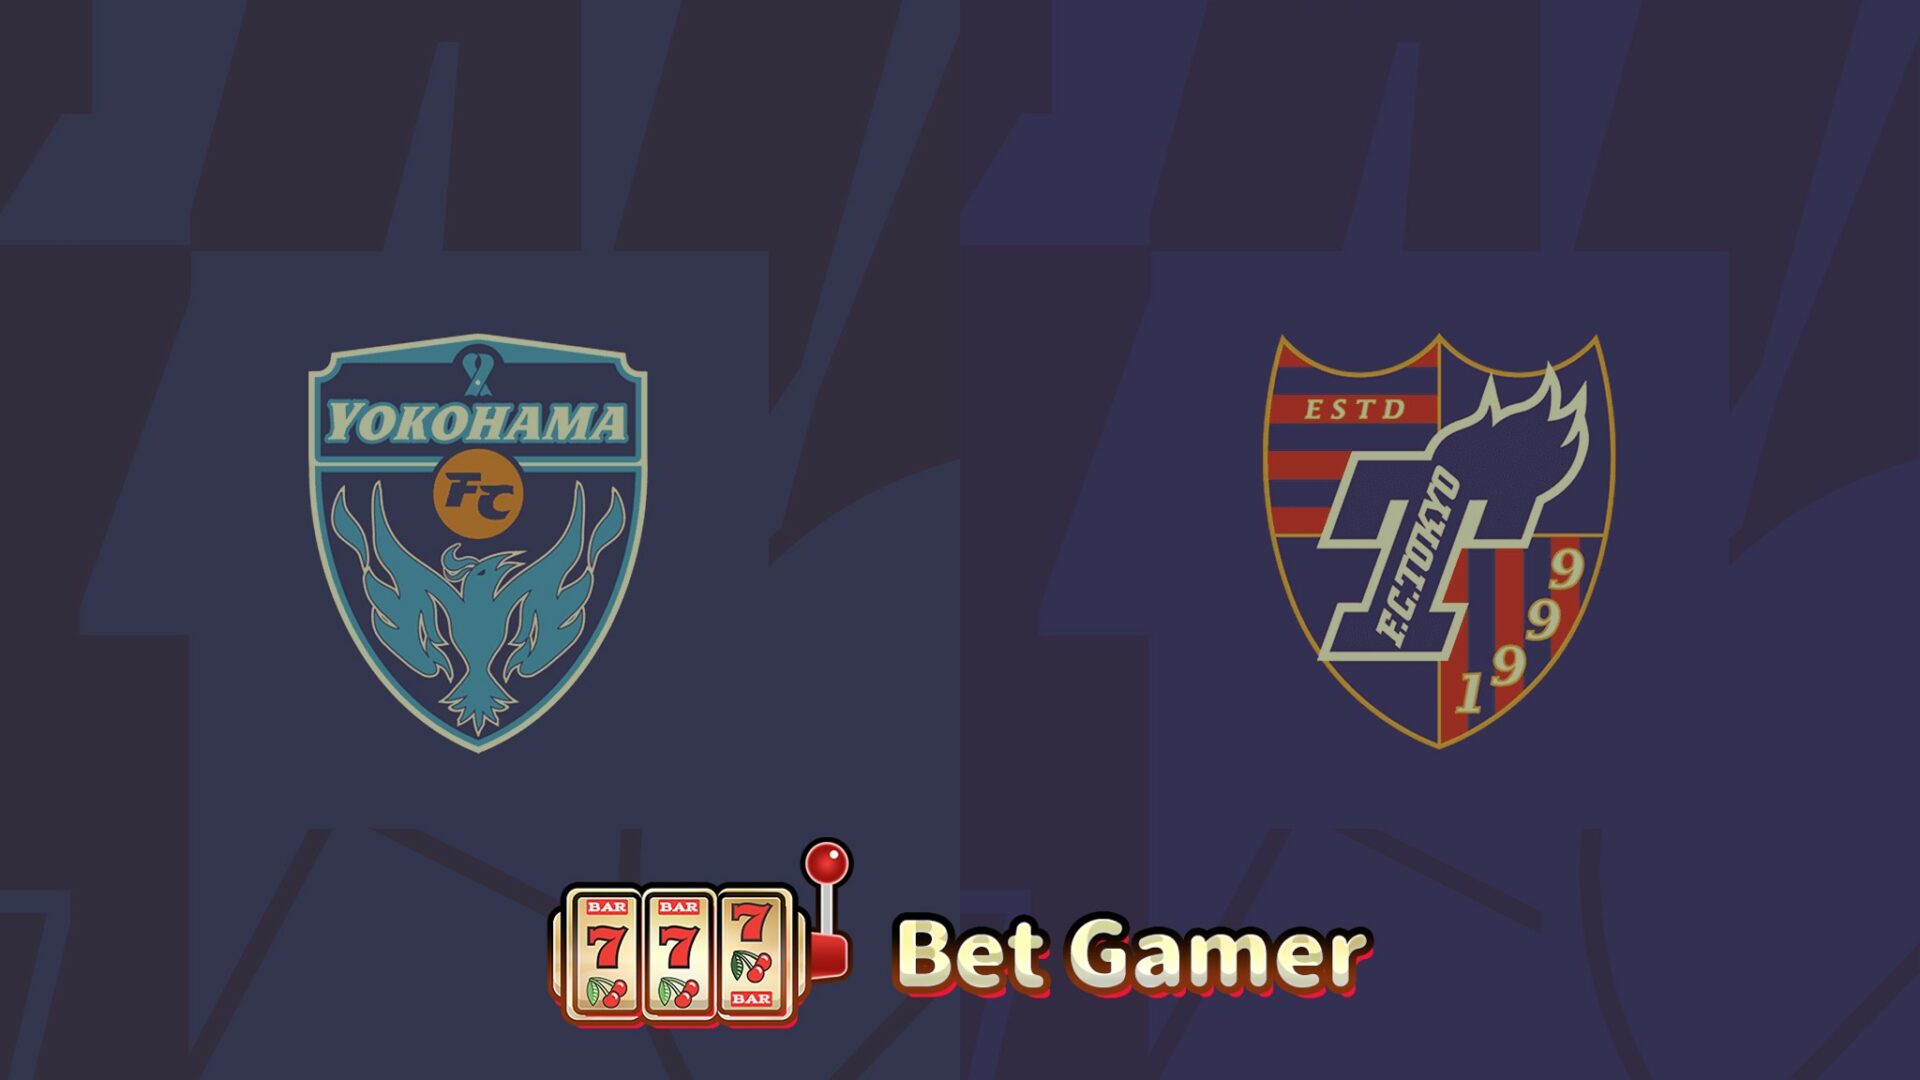 日本プロサッカーリーグJ1 第30節: 詳細分析と勝敗予想